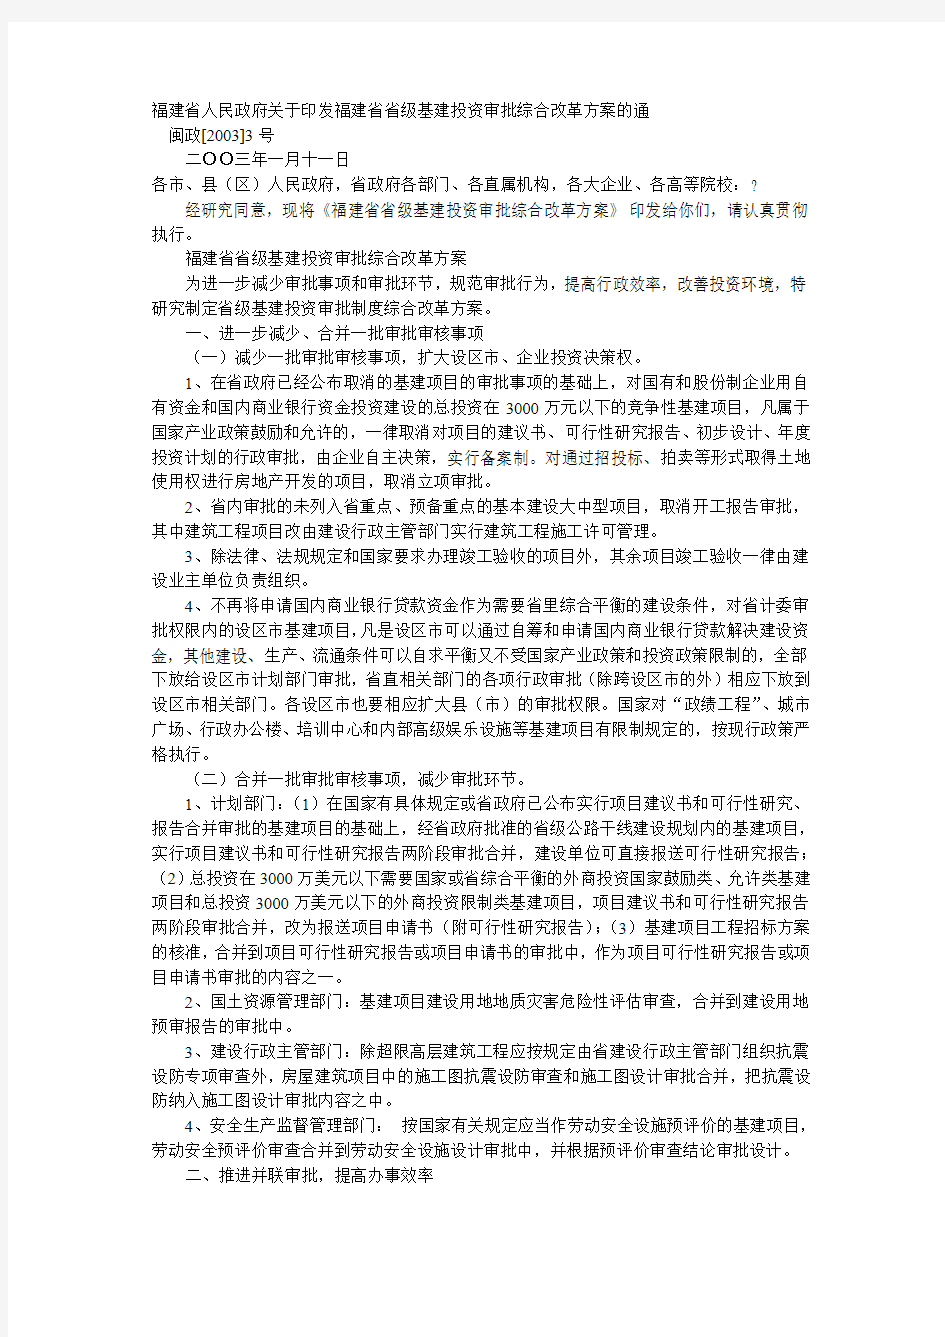 福建省省级基建投资审批综合改革方案 闽政[2003]3号